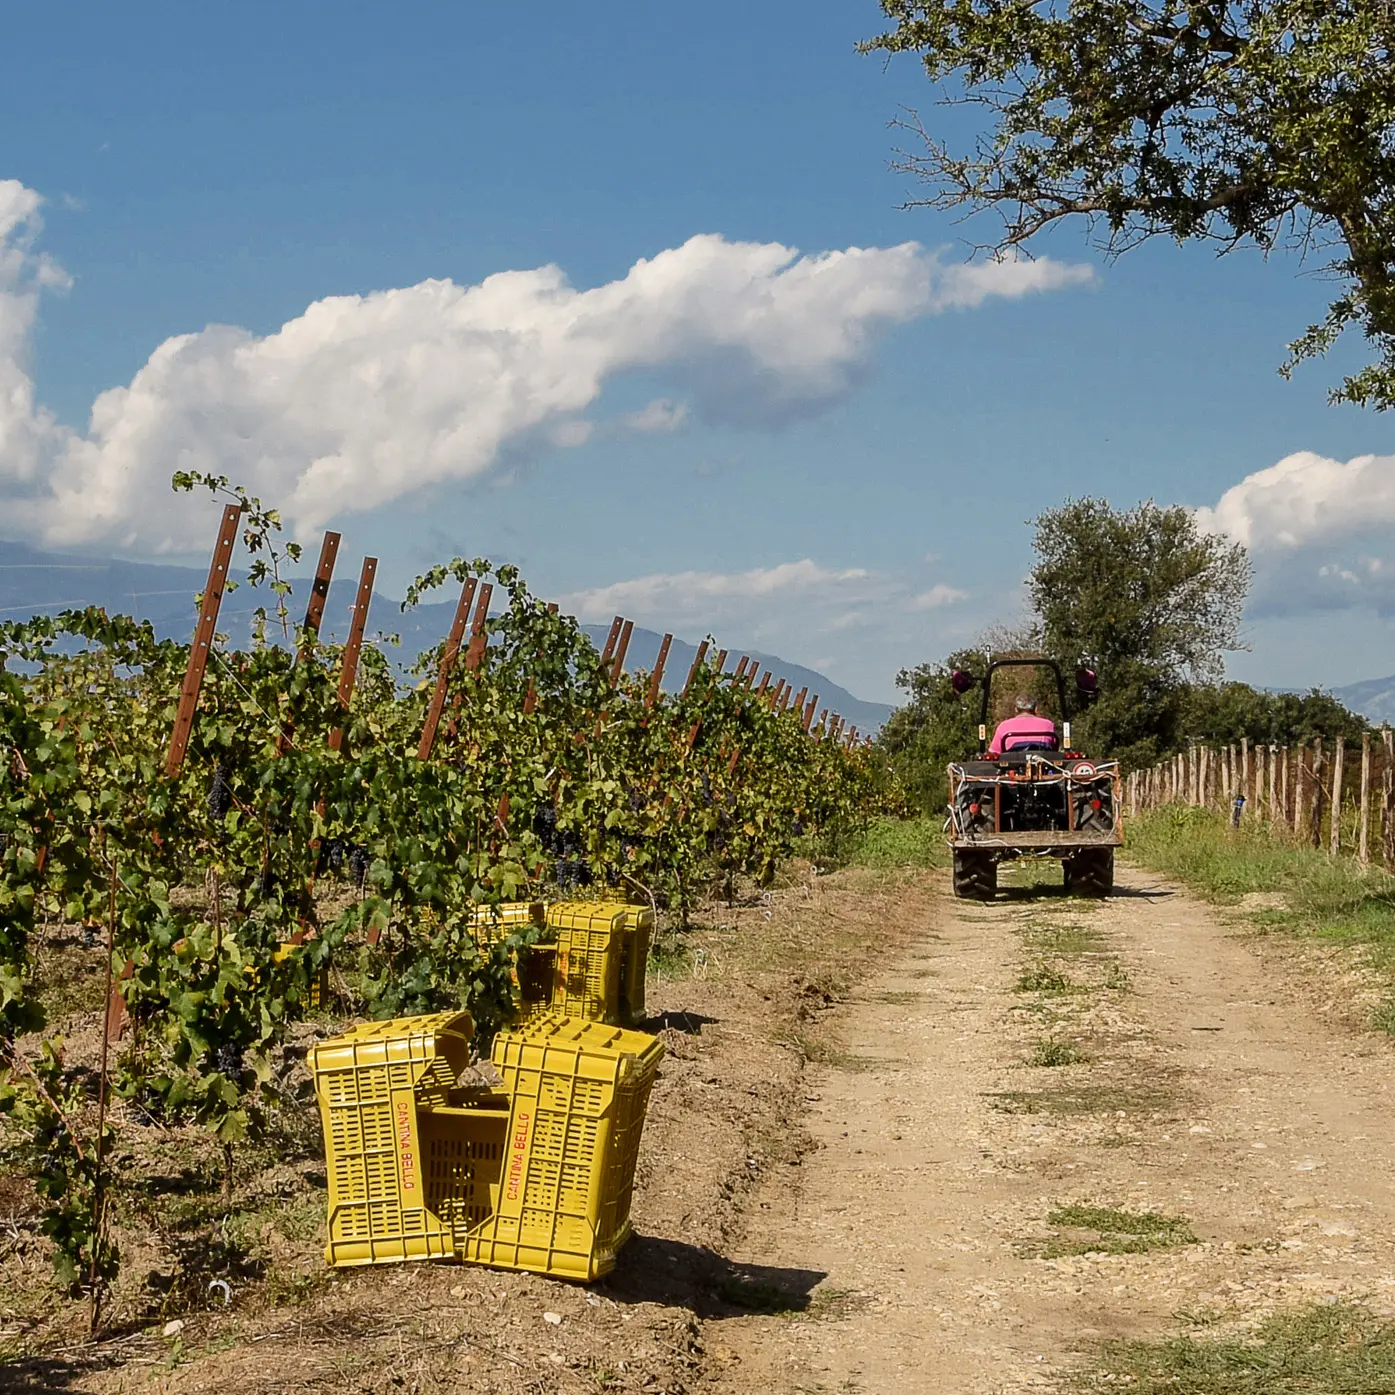 Azienda vitivinicola Cantina Bello: Ciro Bello in vigna sul trattore